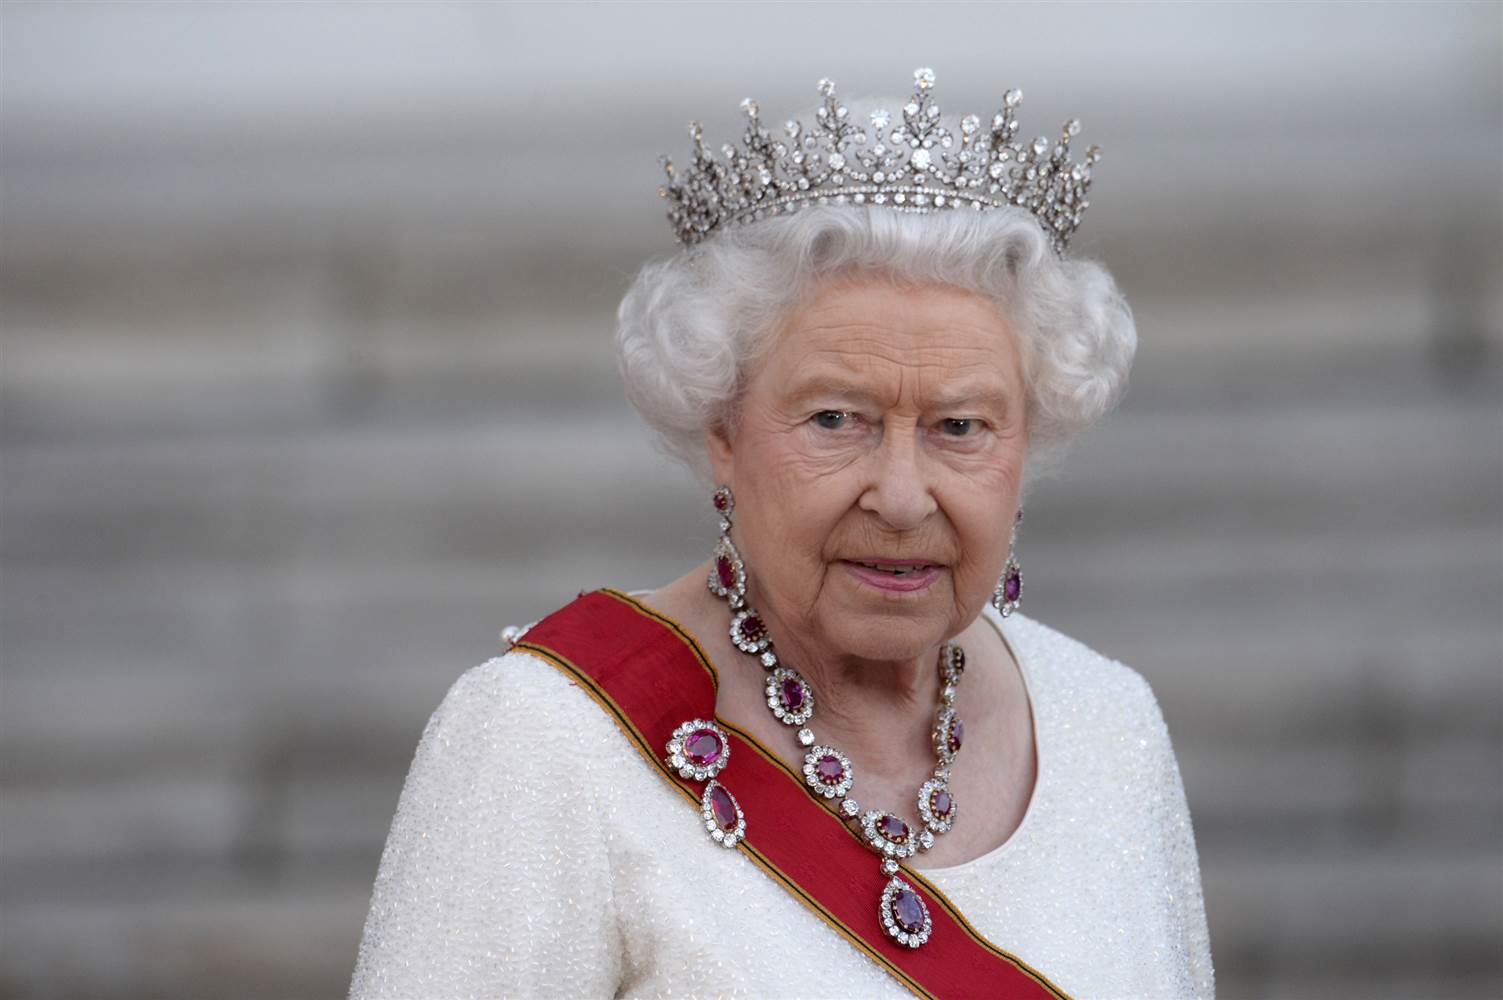 Εσείς ξέρατε γιατί τα μέλη της βασιλικής οικογένειας επιλέγουν να μην φοράνε ζώνη ασφαλείας;